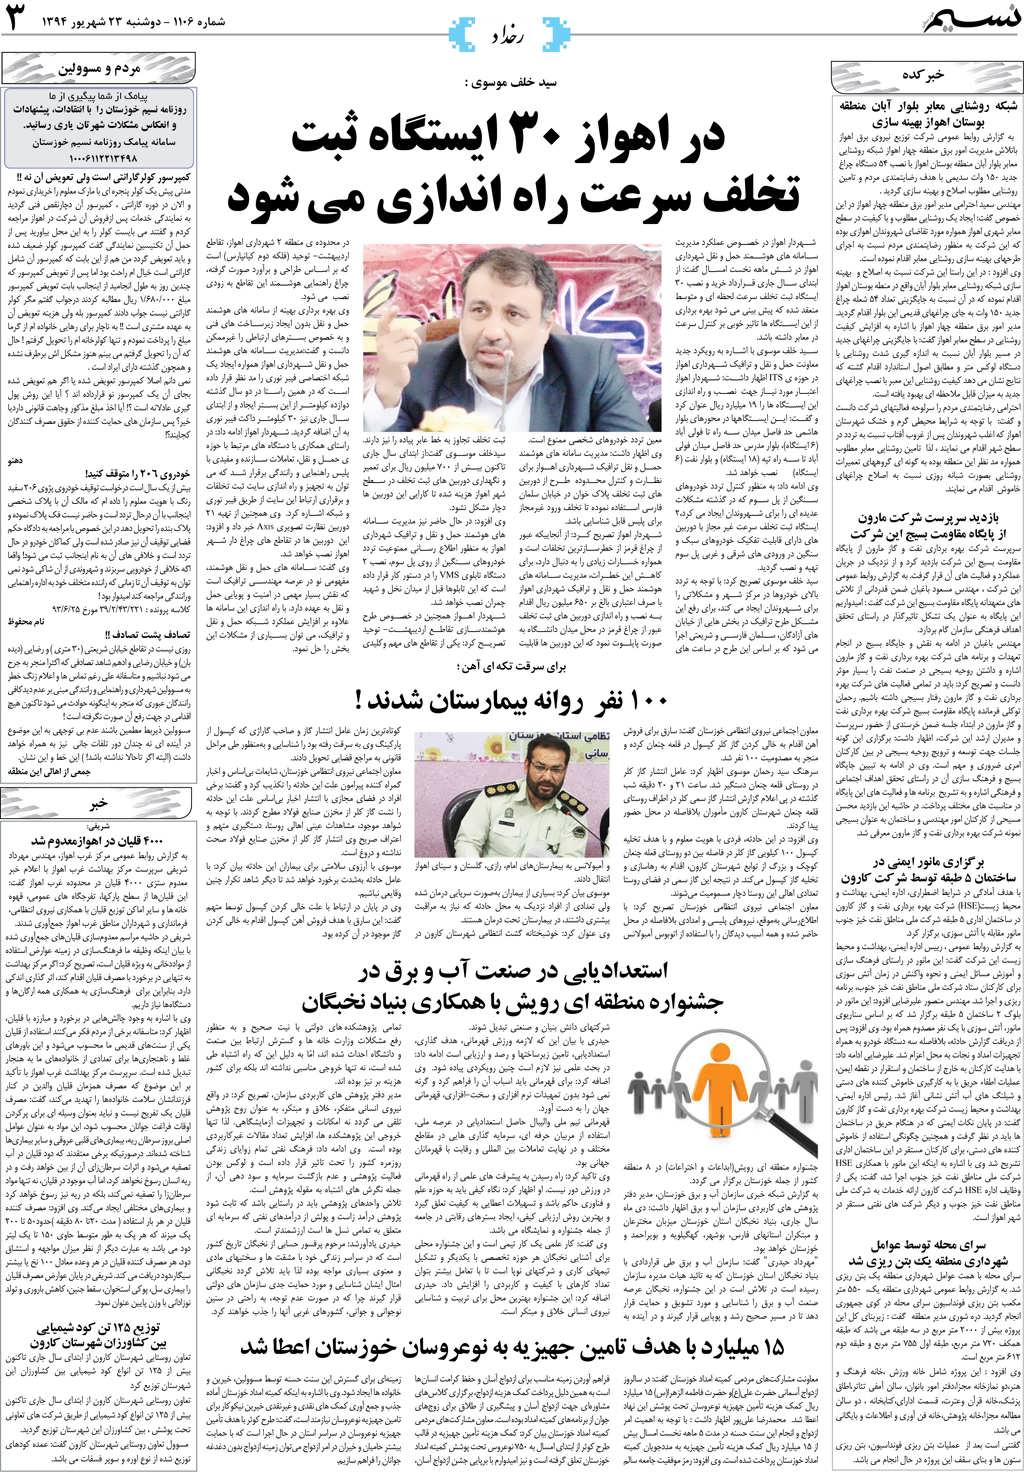 صفحه رخداد روزنامه نسیم شماره 1106